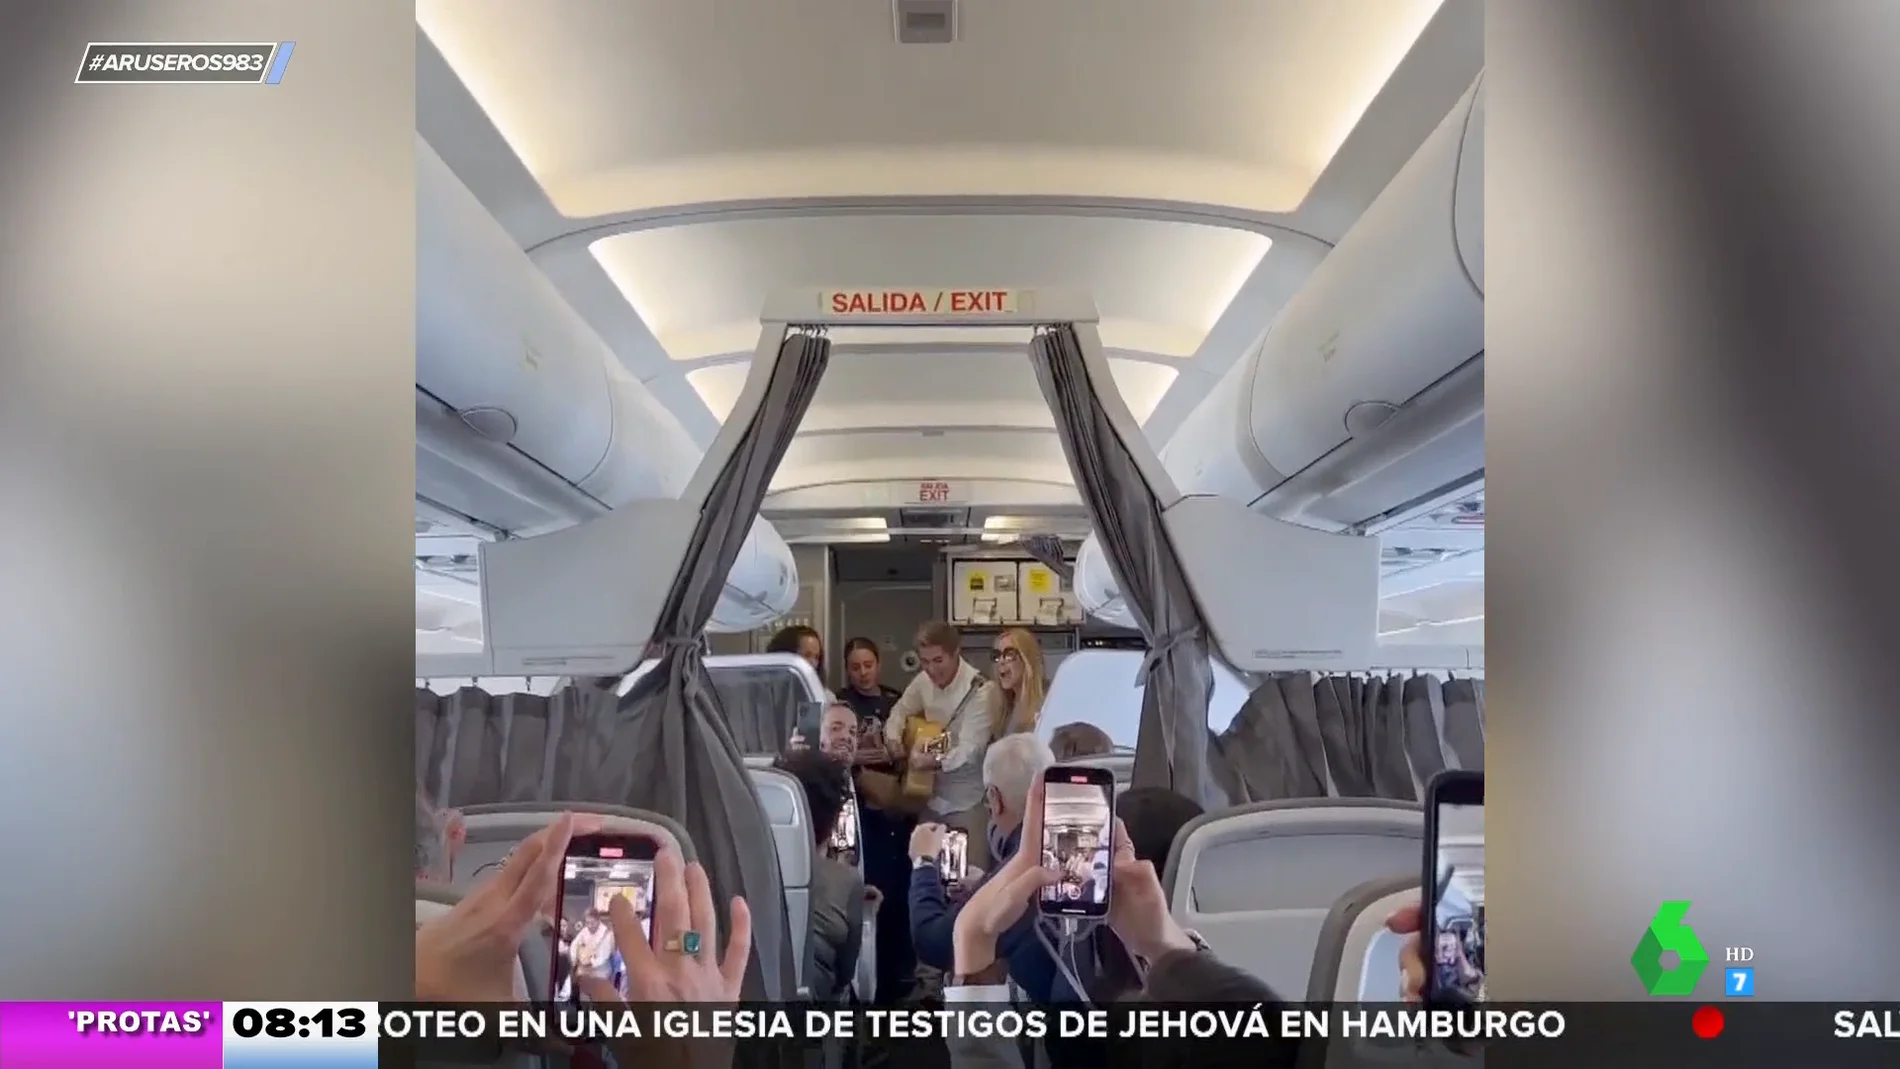 Marta Sánchez y Carlos Baute dan un concierto en pleno vuelo para tranquilizar a los pasajeros tras unas turbulencias